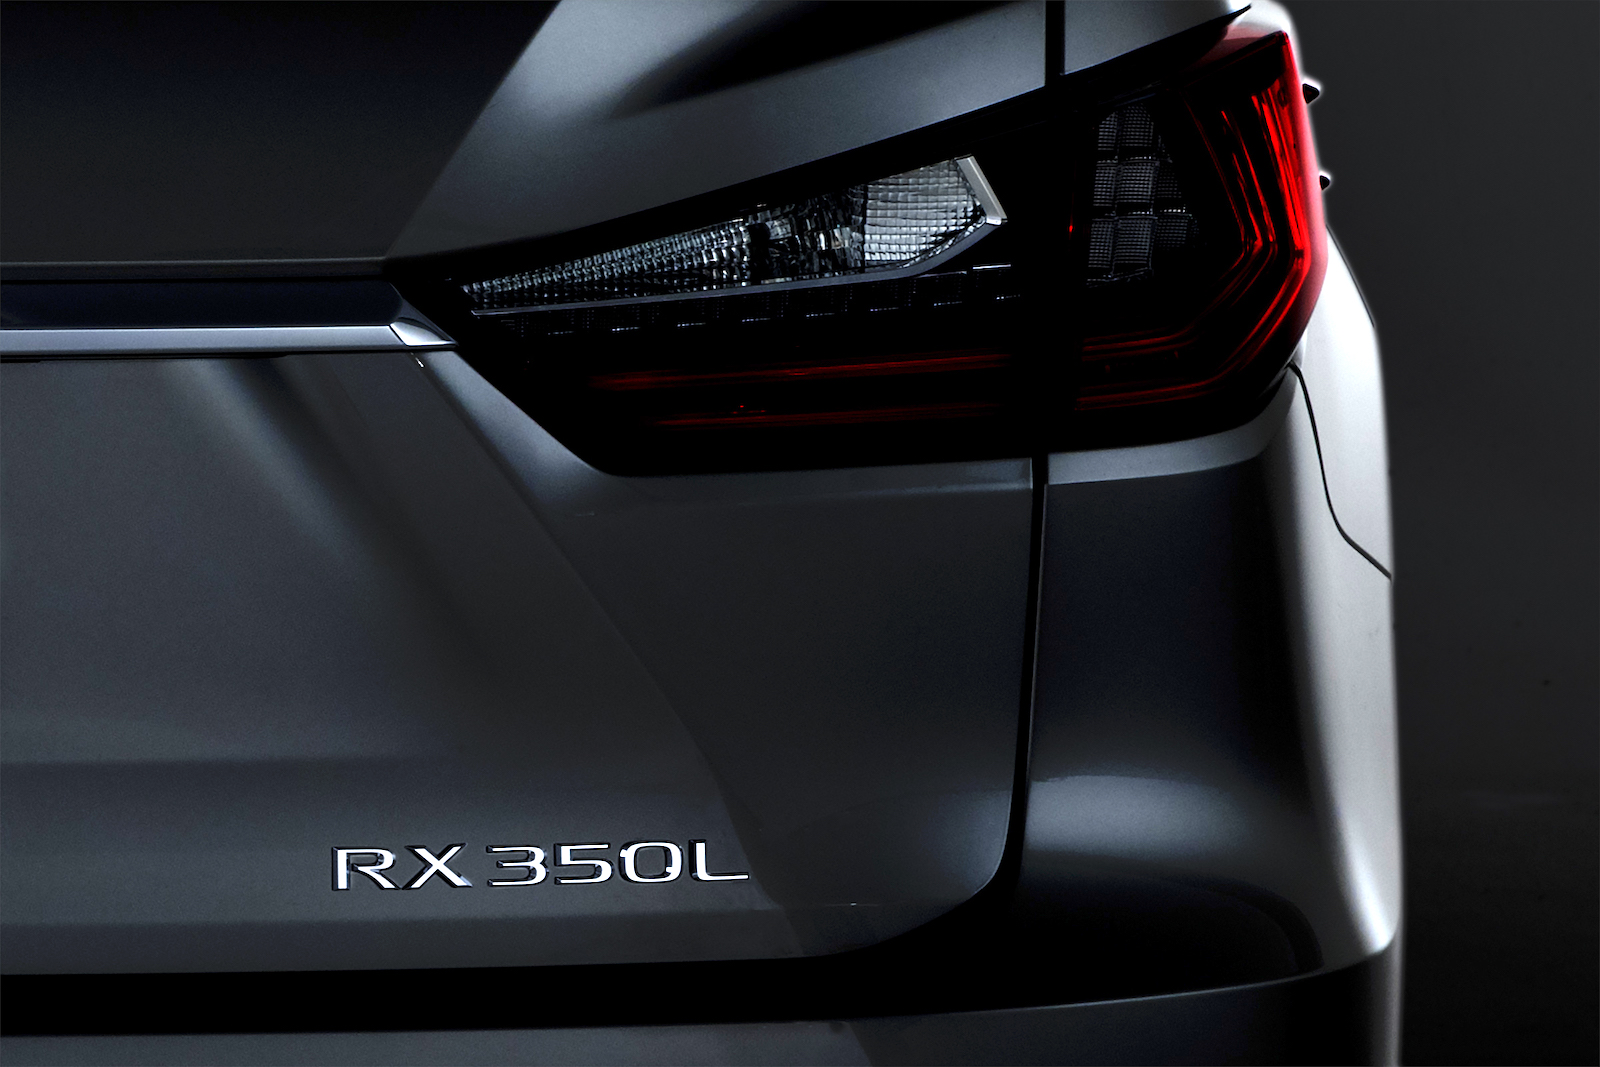 Lexus RX 350L 7-seat SUV confirmed, debuts at LA show